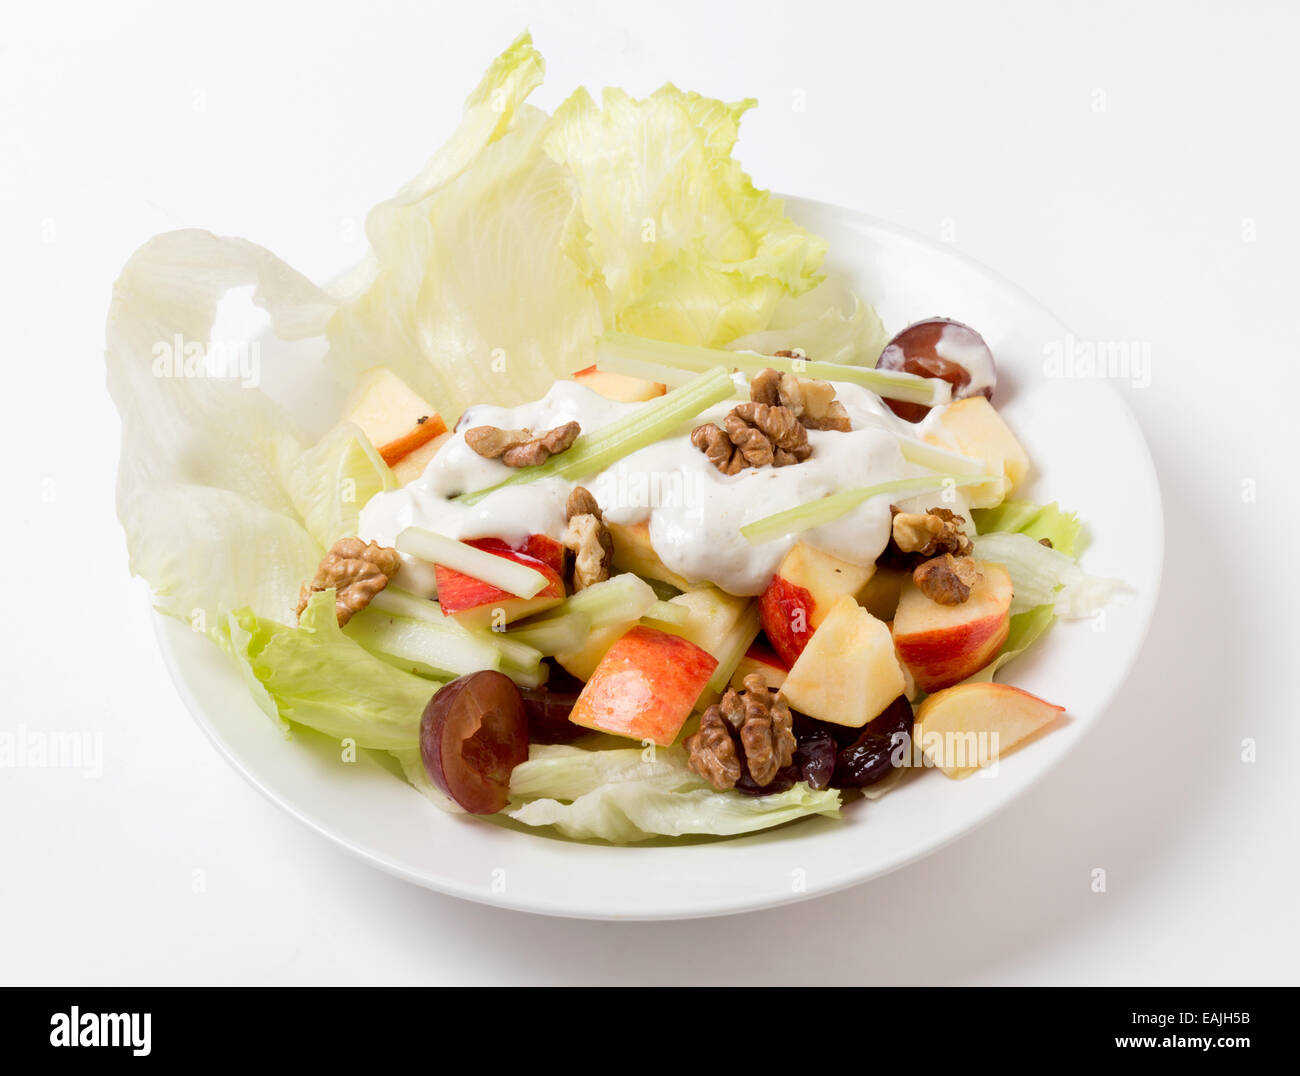 Ein traditioneller Waldorfsalat mit Salat, Apfel, Trauben, Walnüssen und Sellerie-Sticks, gekrönt mit einem modernen Dressing Joghurt mit Stockfoto